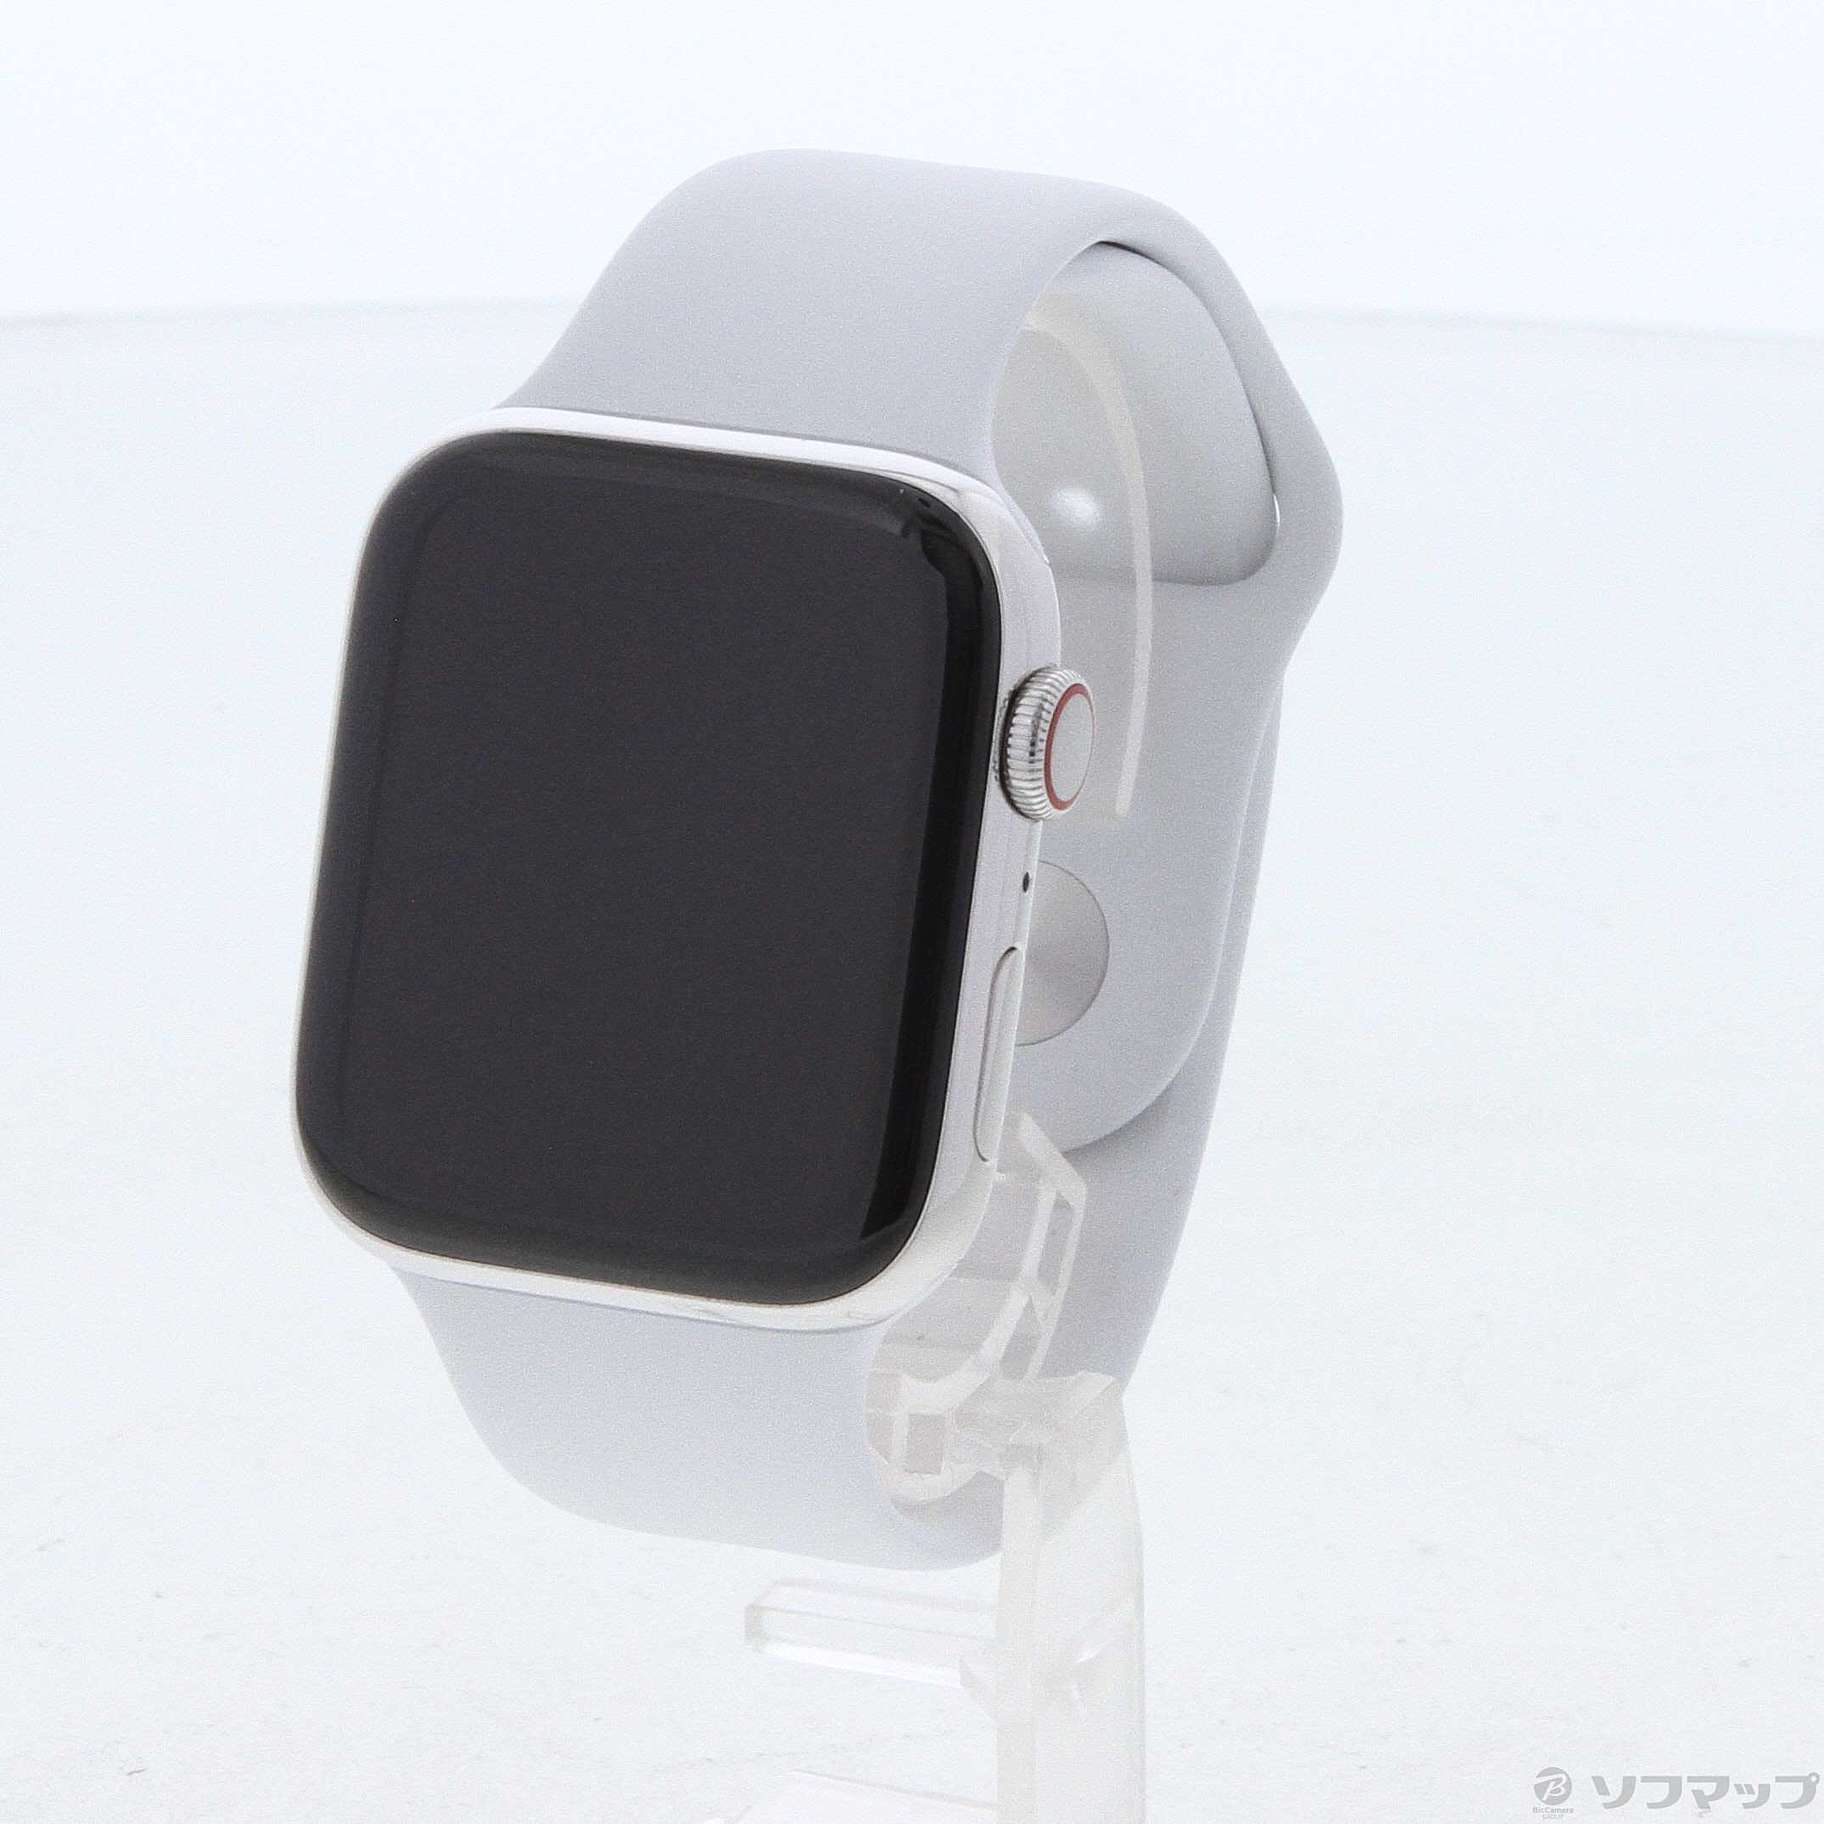 セール対象品 Apple Watch Series 4 GPS + Cellular 44mm ステンレススチールケース ホワイトスポーツバンド